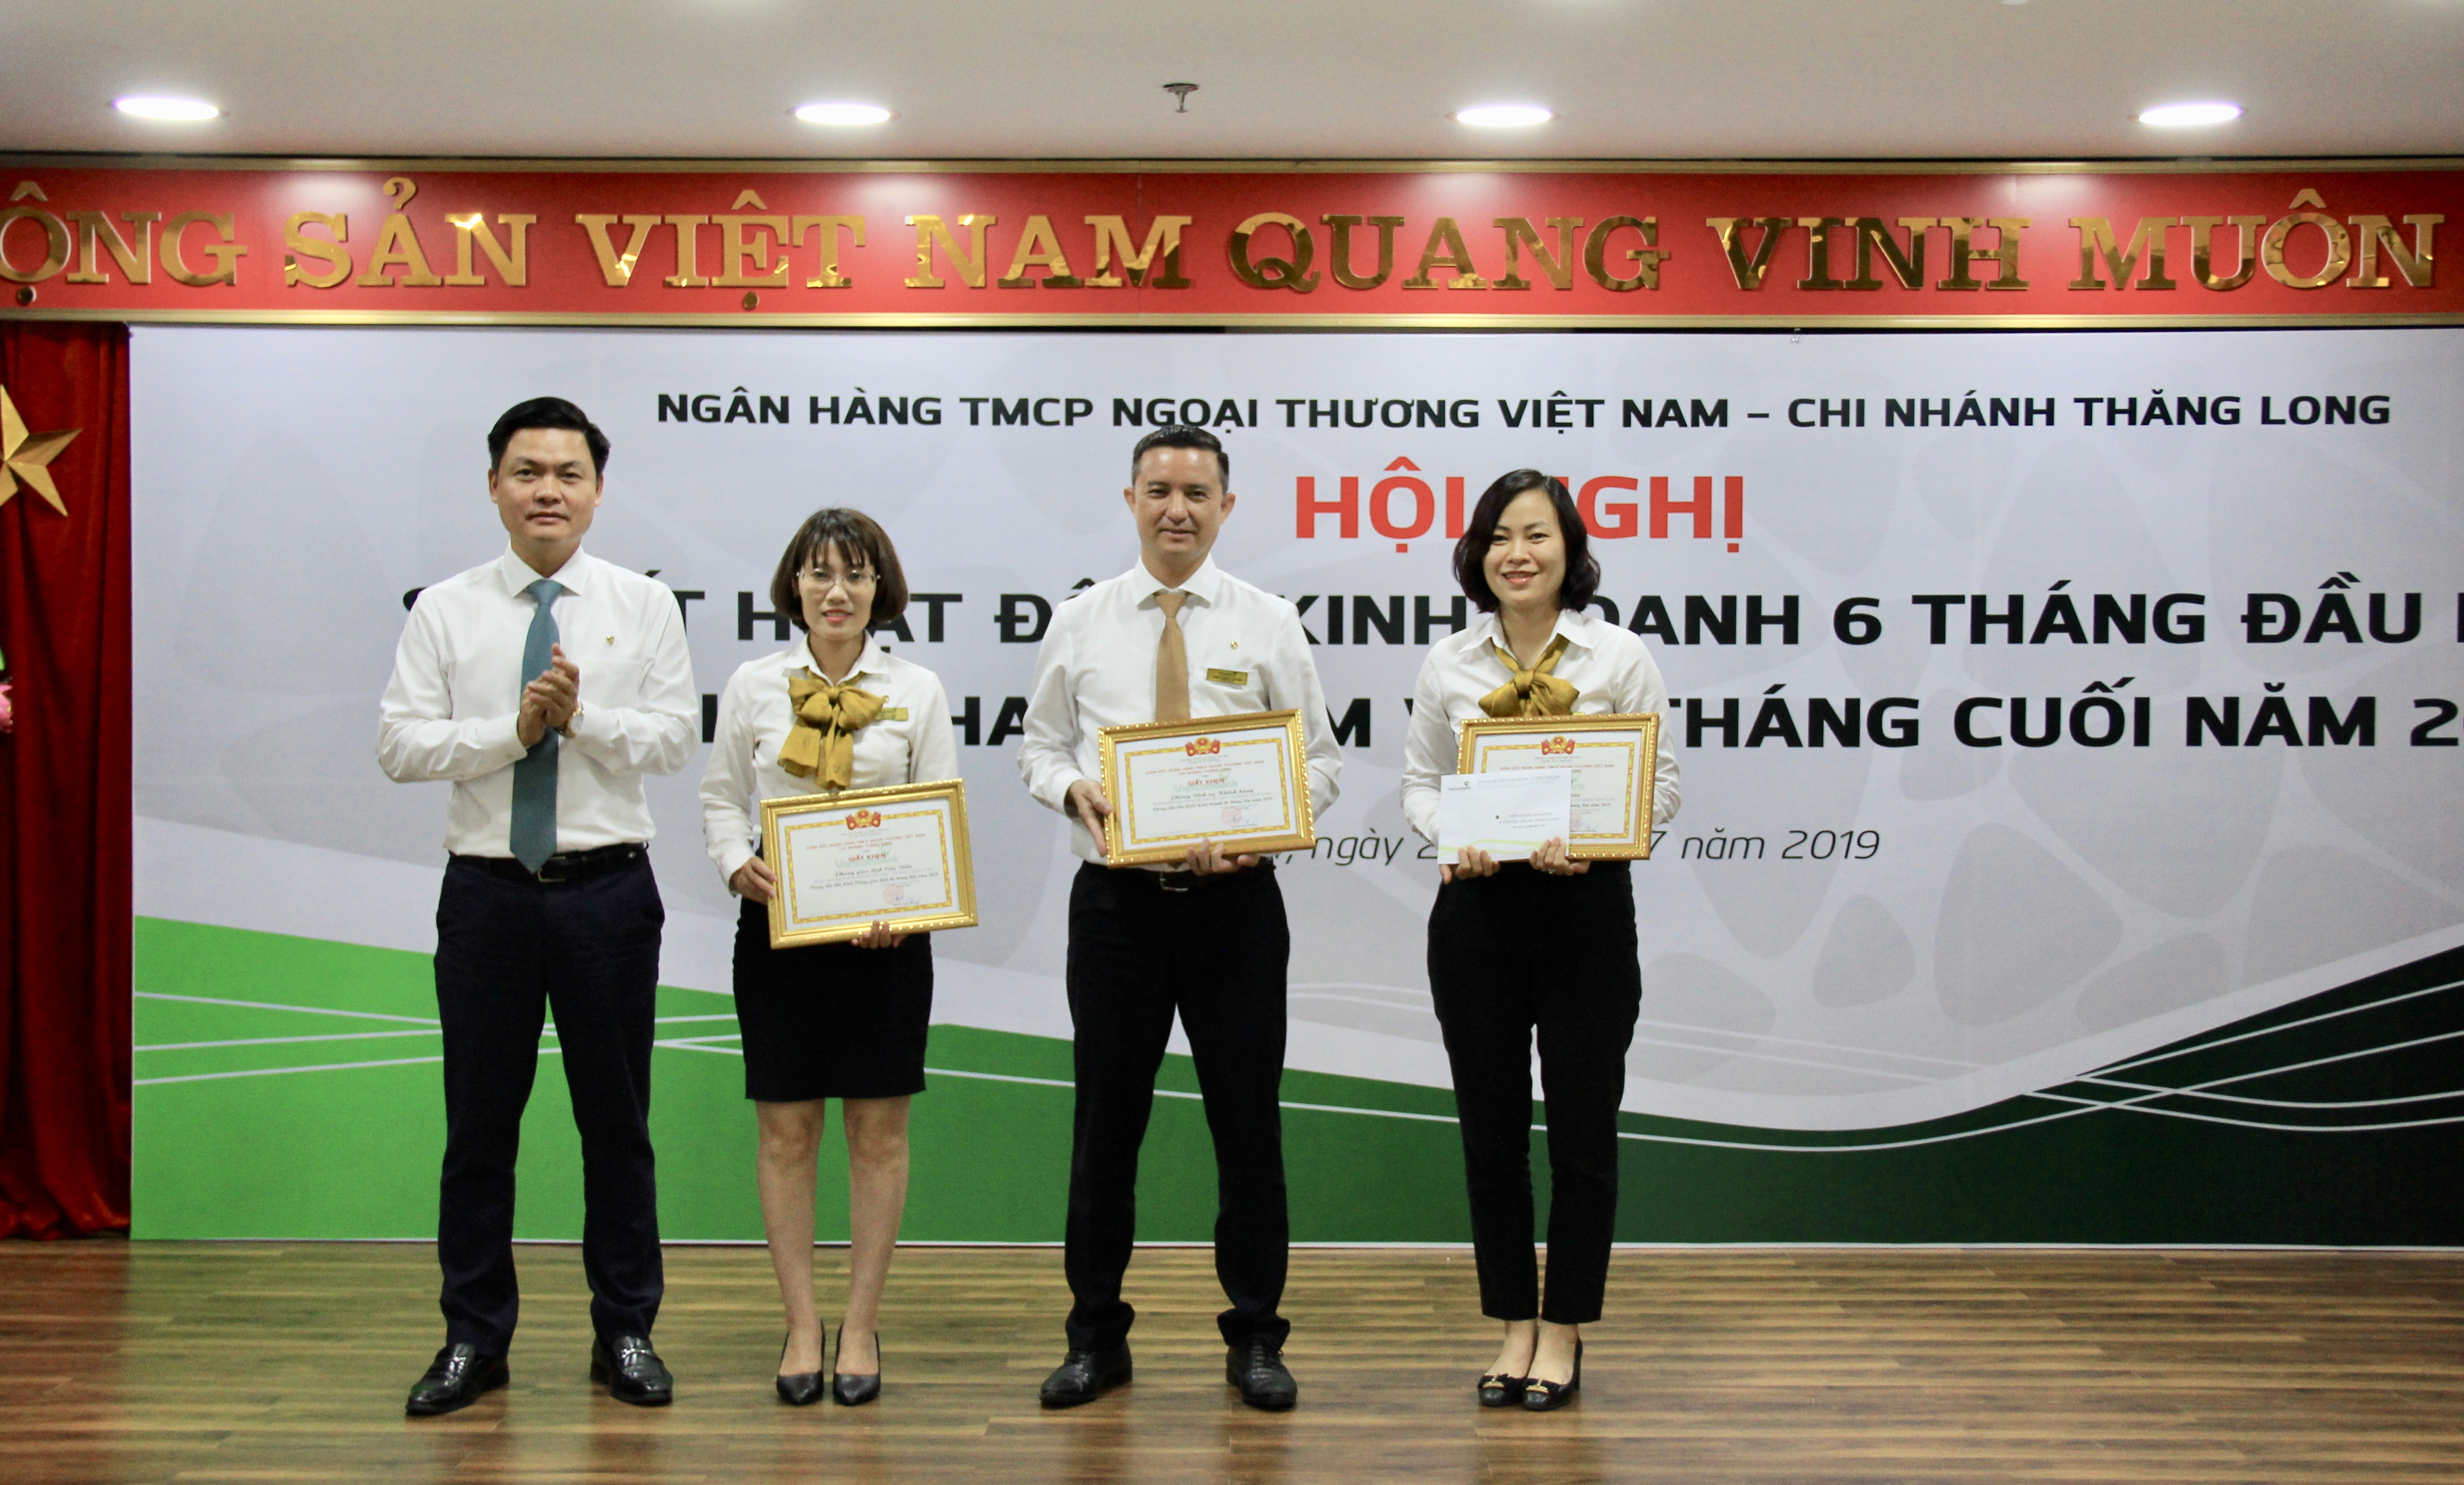 Vietcombank Thăng Long tổng kết hoạt động kinh doanh 6 tháng đầu và triển khai nhiệm vụ 6 tháng cuối năm 2019